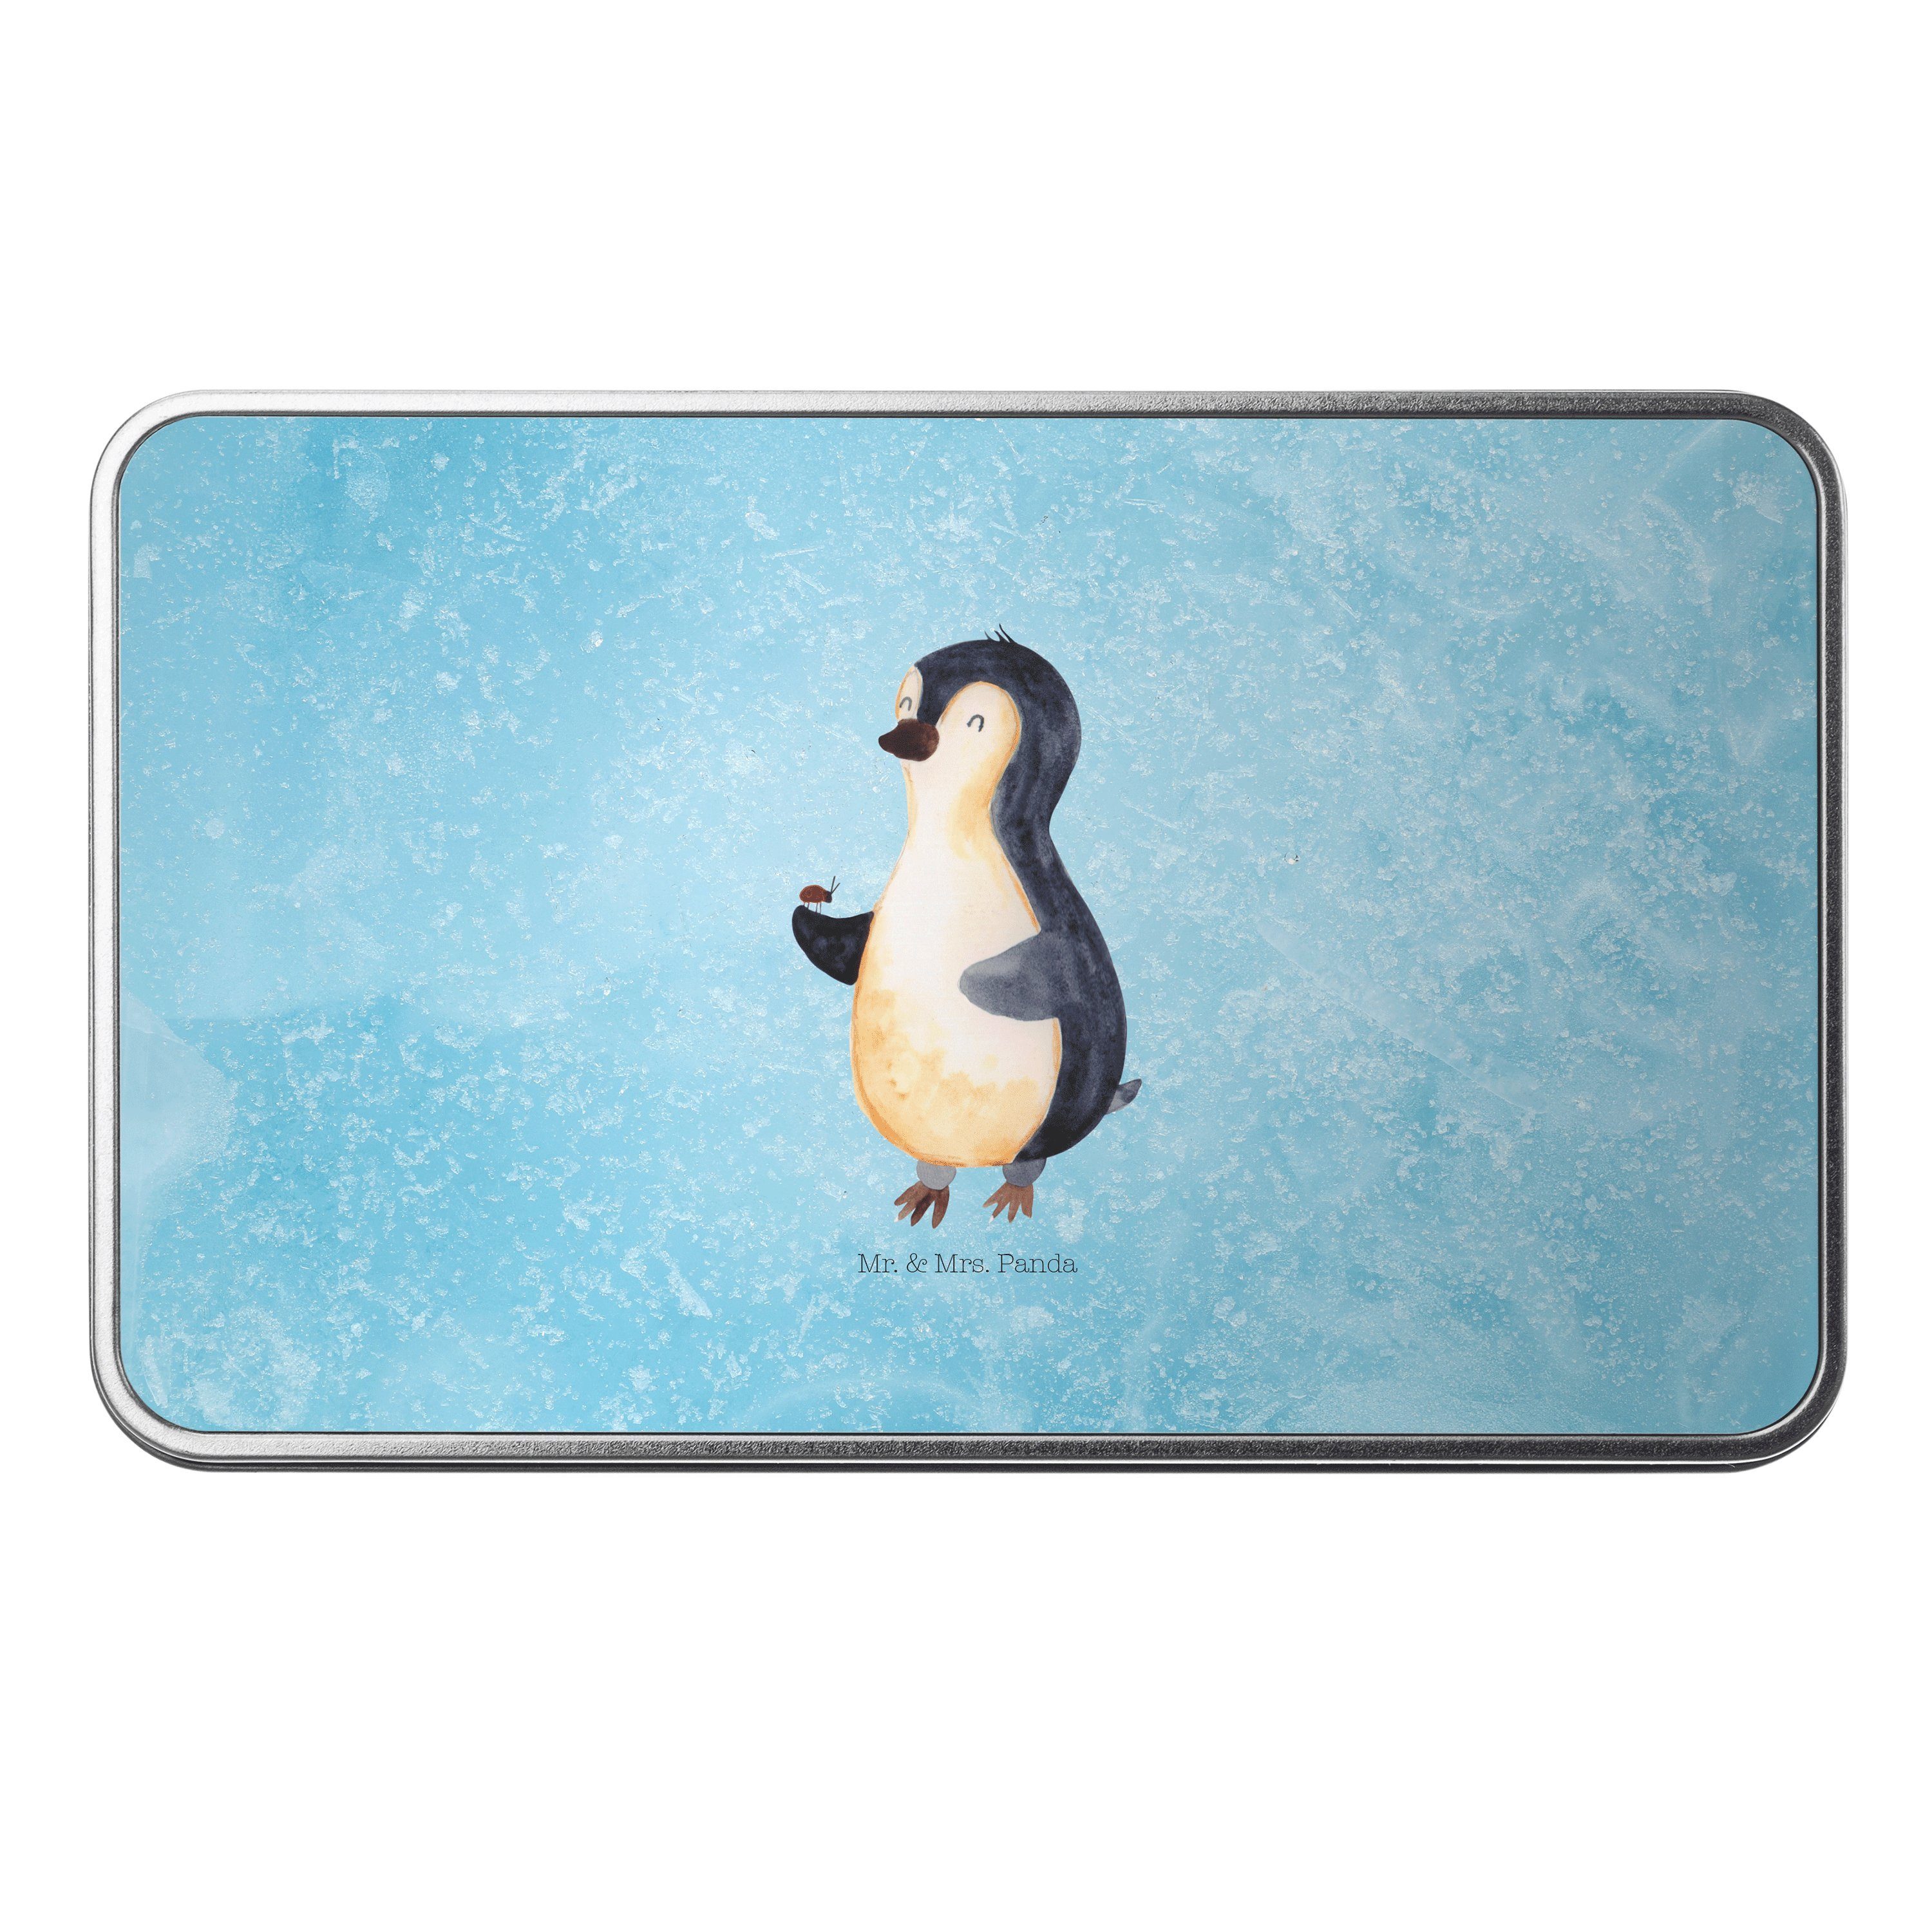 Mr. & Mrs. Panda Dose Pinguin Marienkäfer - Eisblau - Geschenk, Pinguine, Glück, Versperbox (1 St)